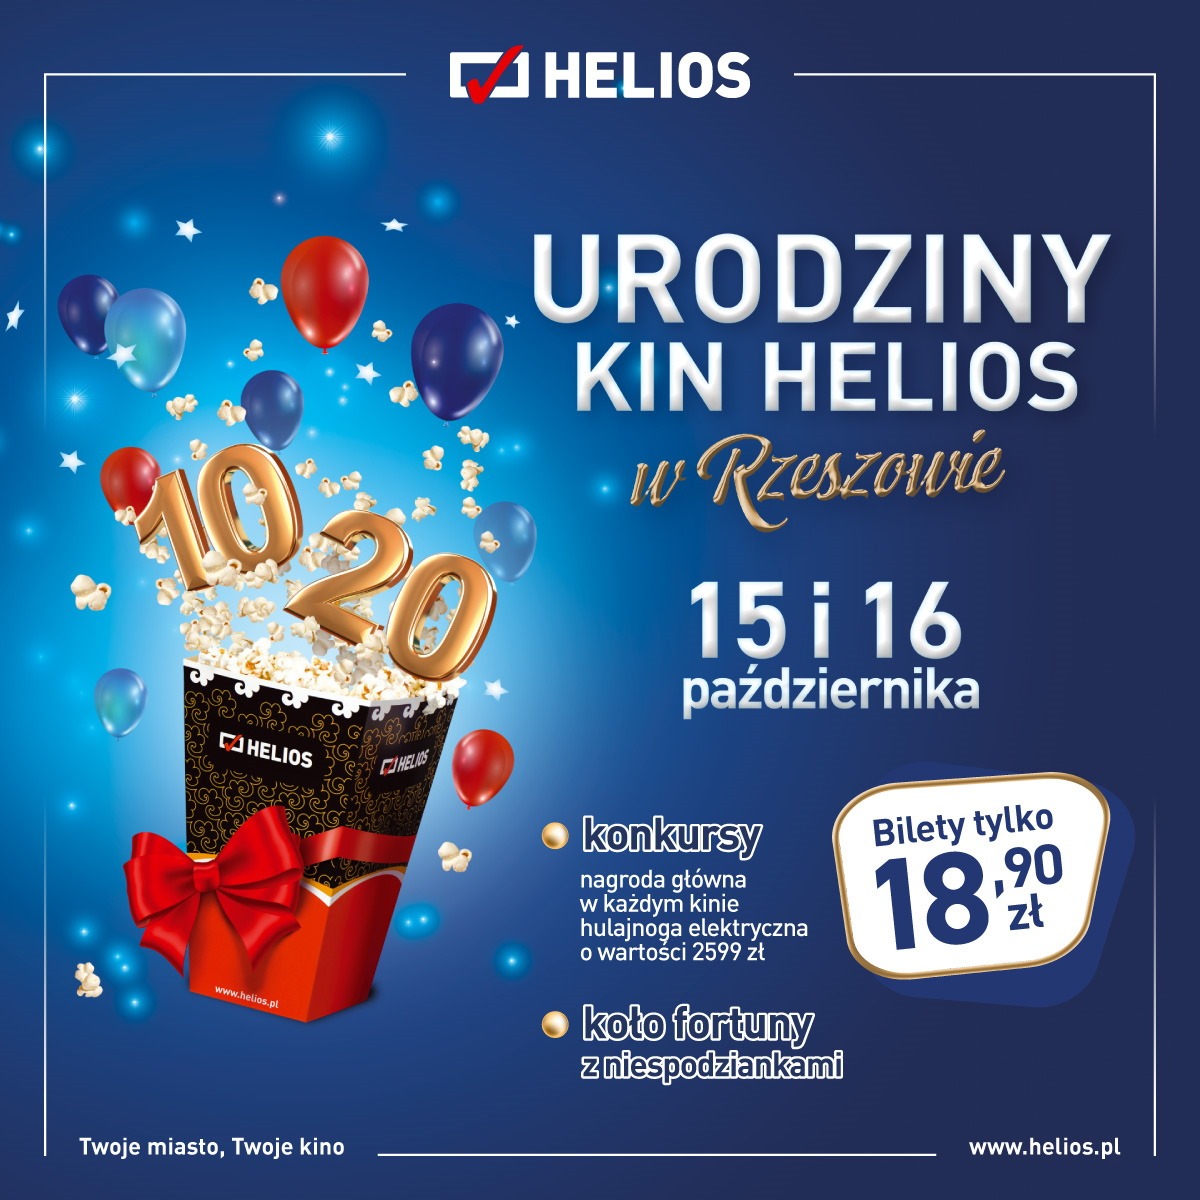 Urodziny - kina Helios w Rzeszowie